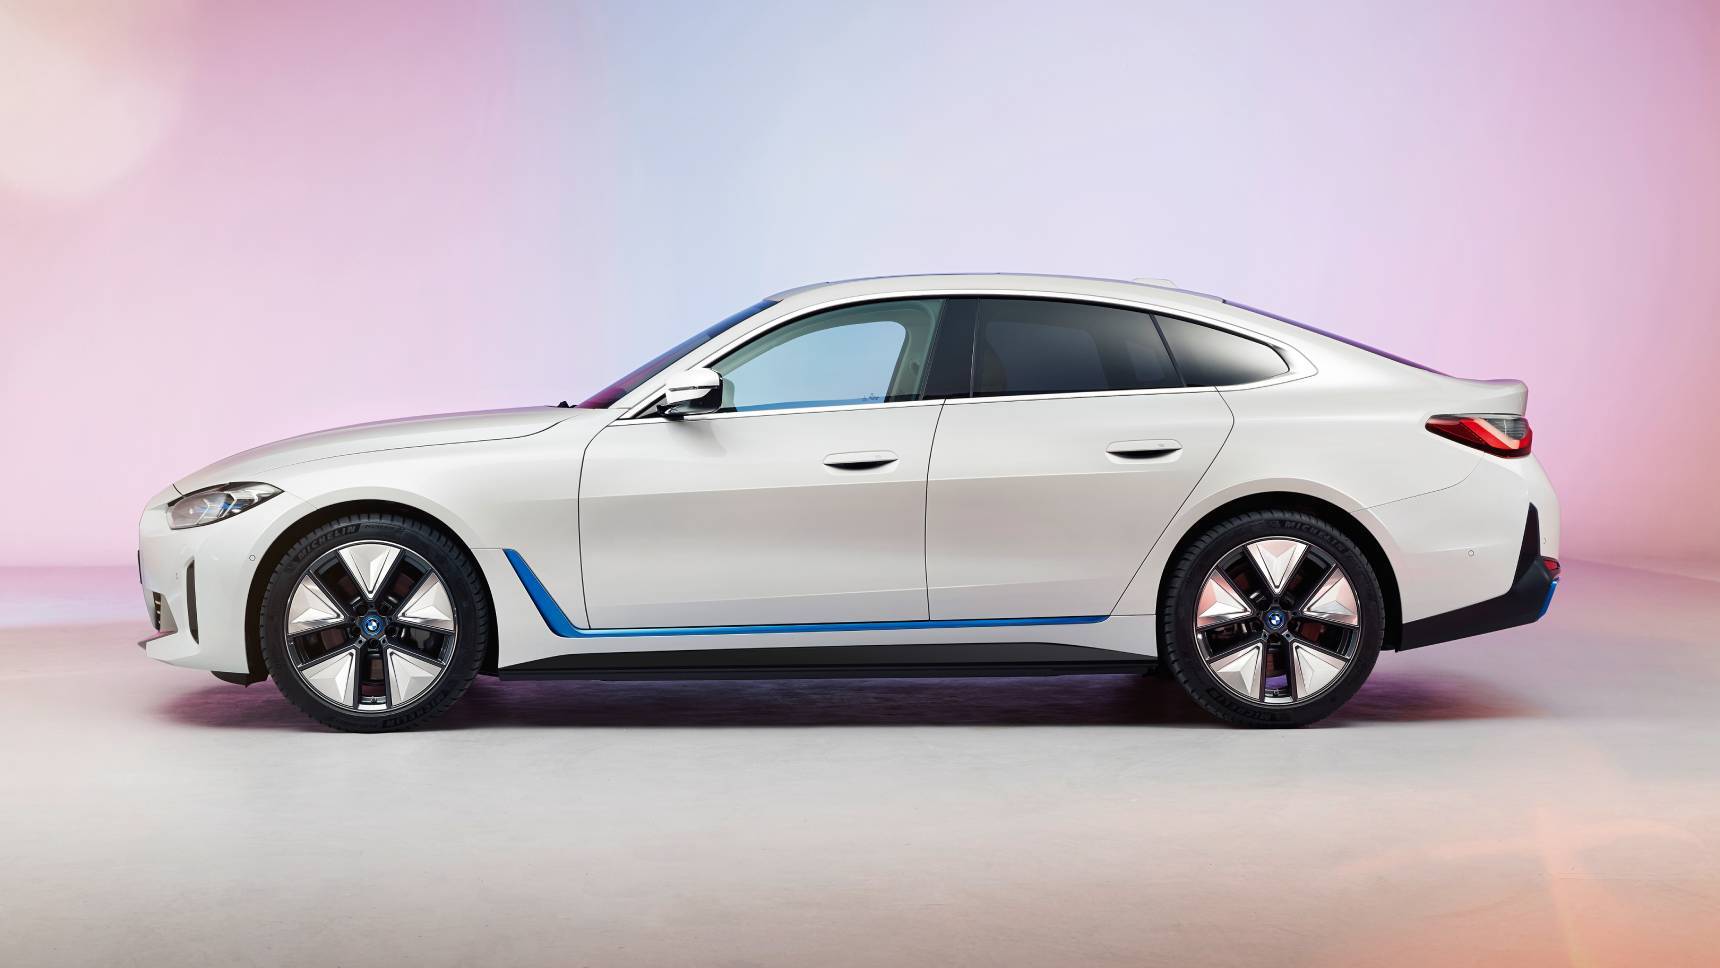 BMW показал новый электрический спорт-седан с большим «грилем»